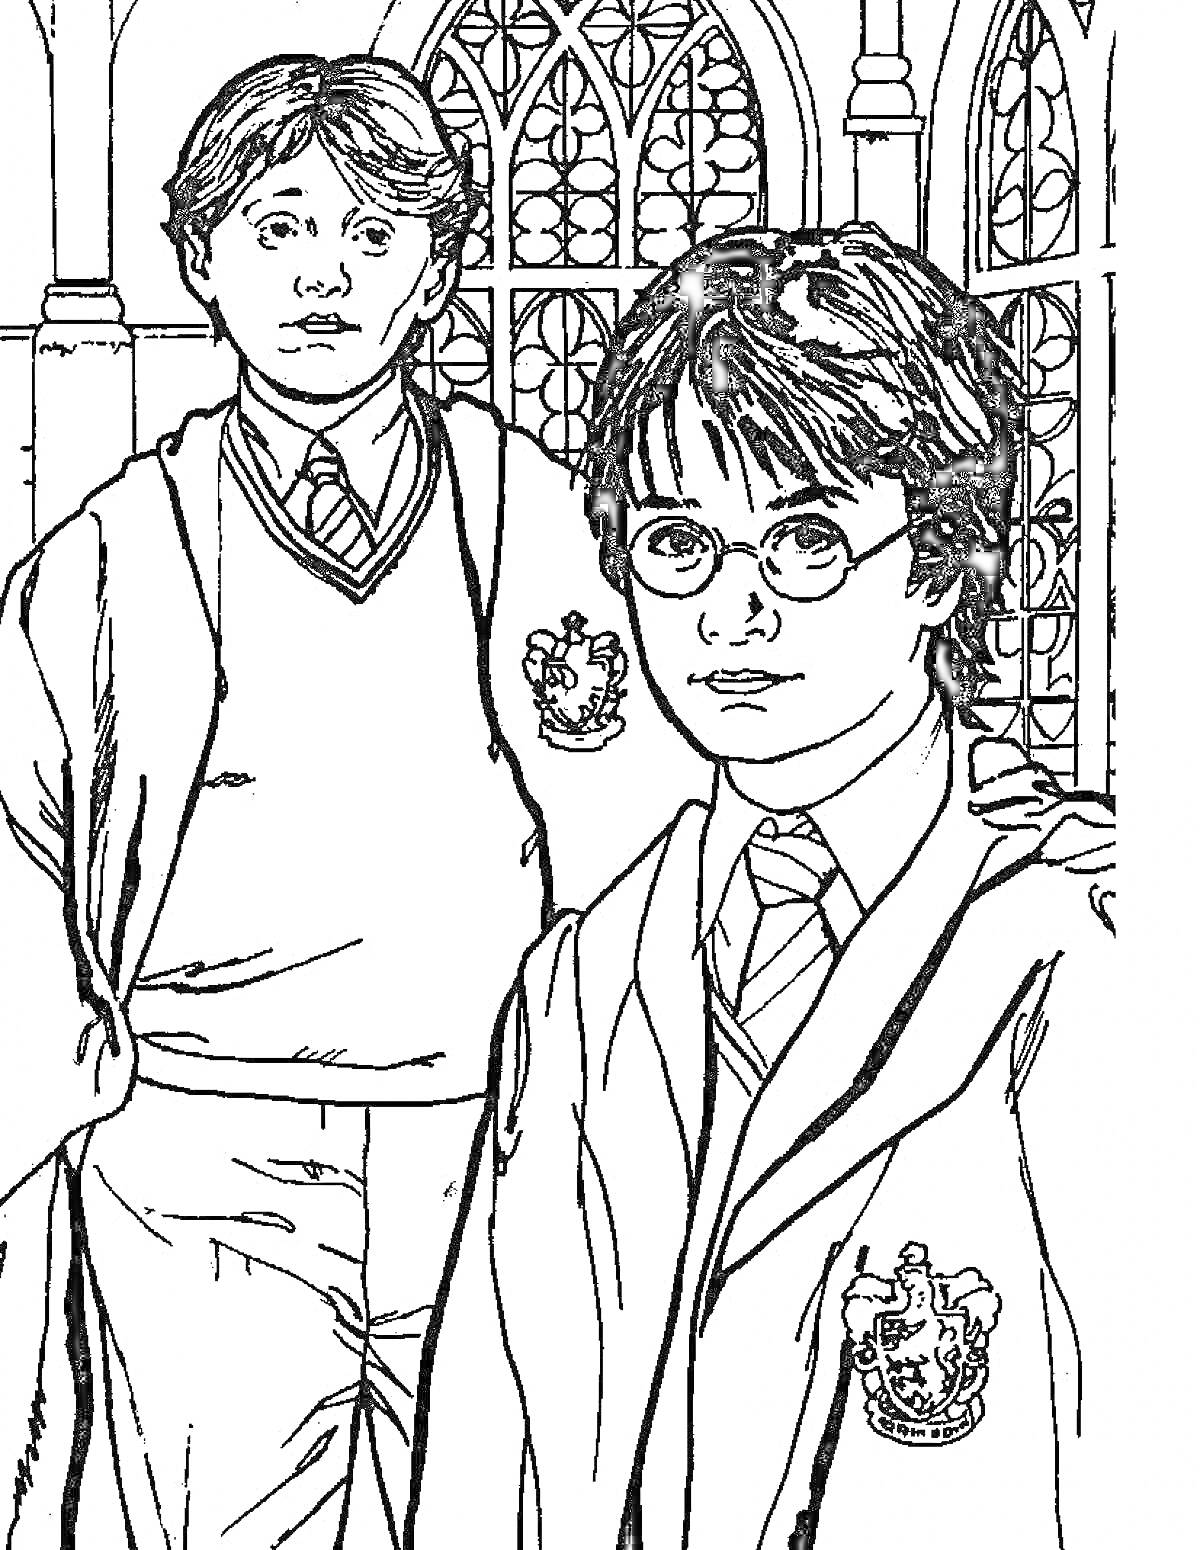 Два персонажа в мантиях, один с очками, на фоне окна в стиле готики